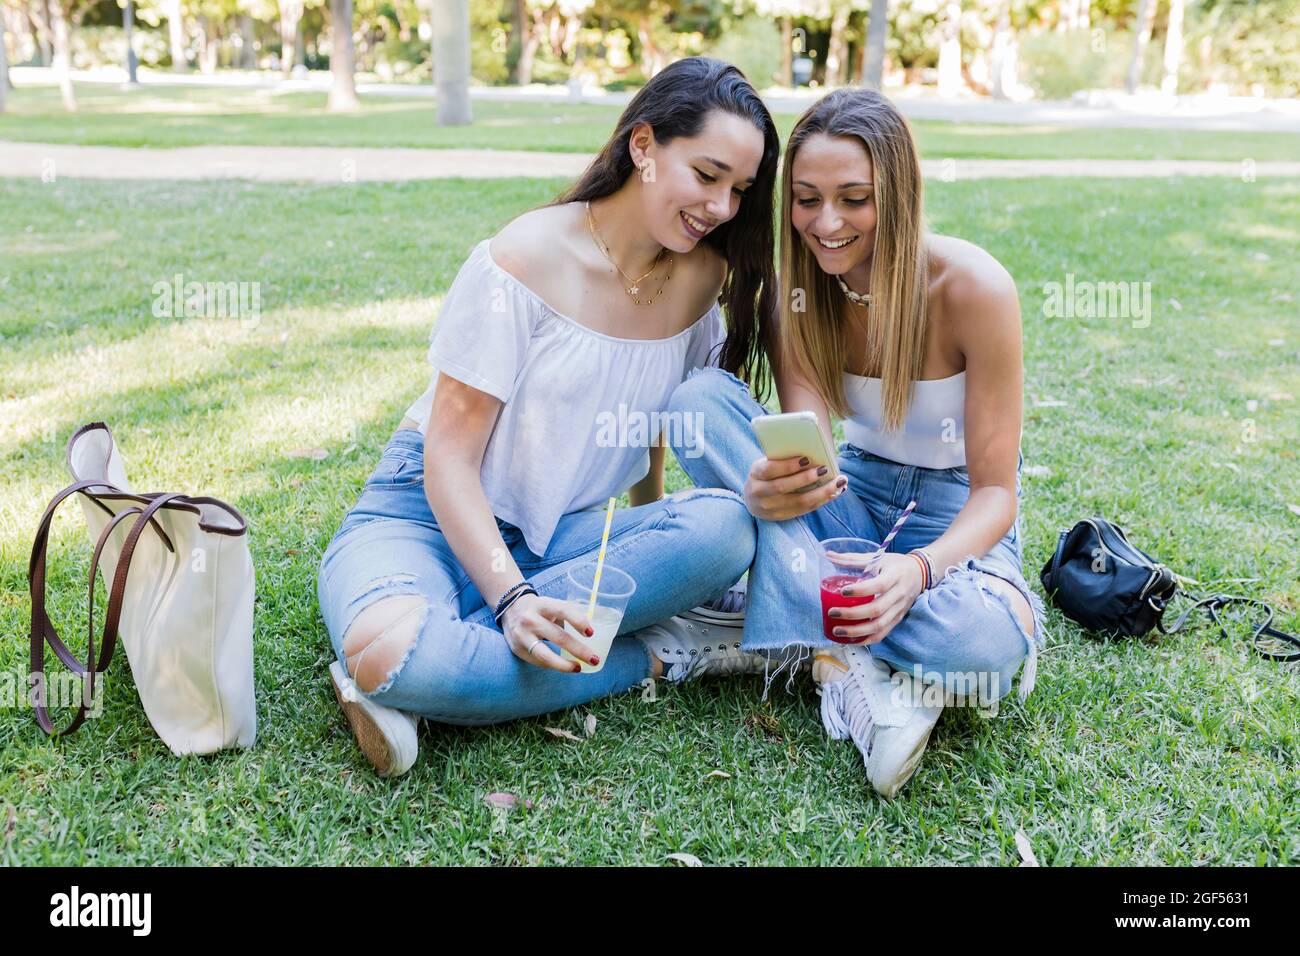 Weibliche Freunde halten Getränke, während sie im öffentlichen Park ein Smartphone teilen Stockfoto